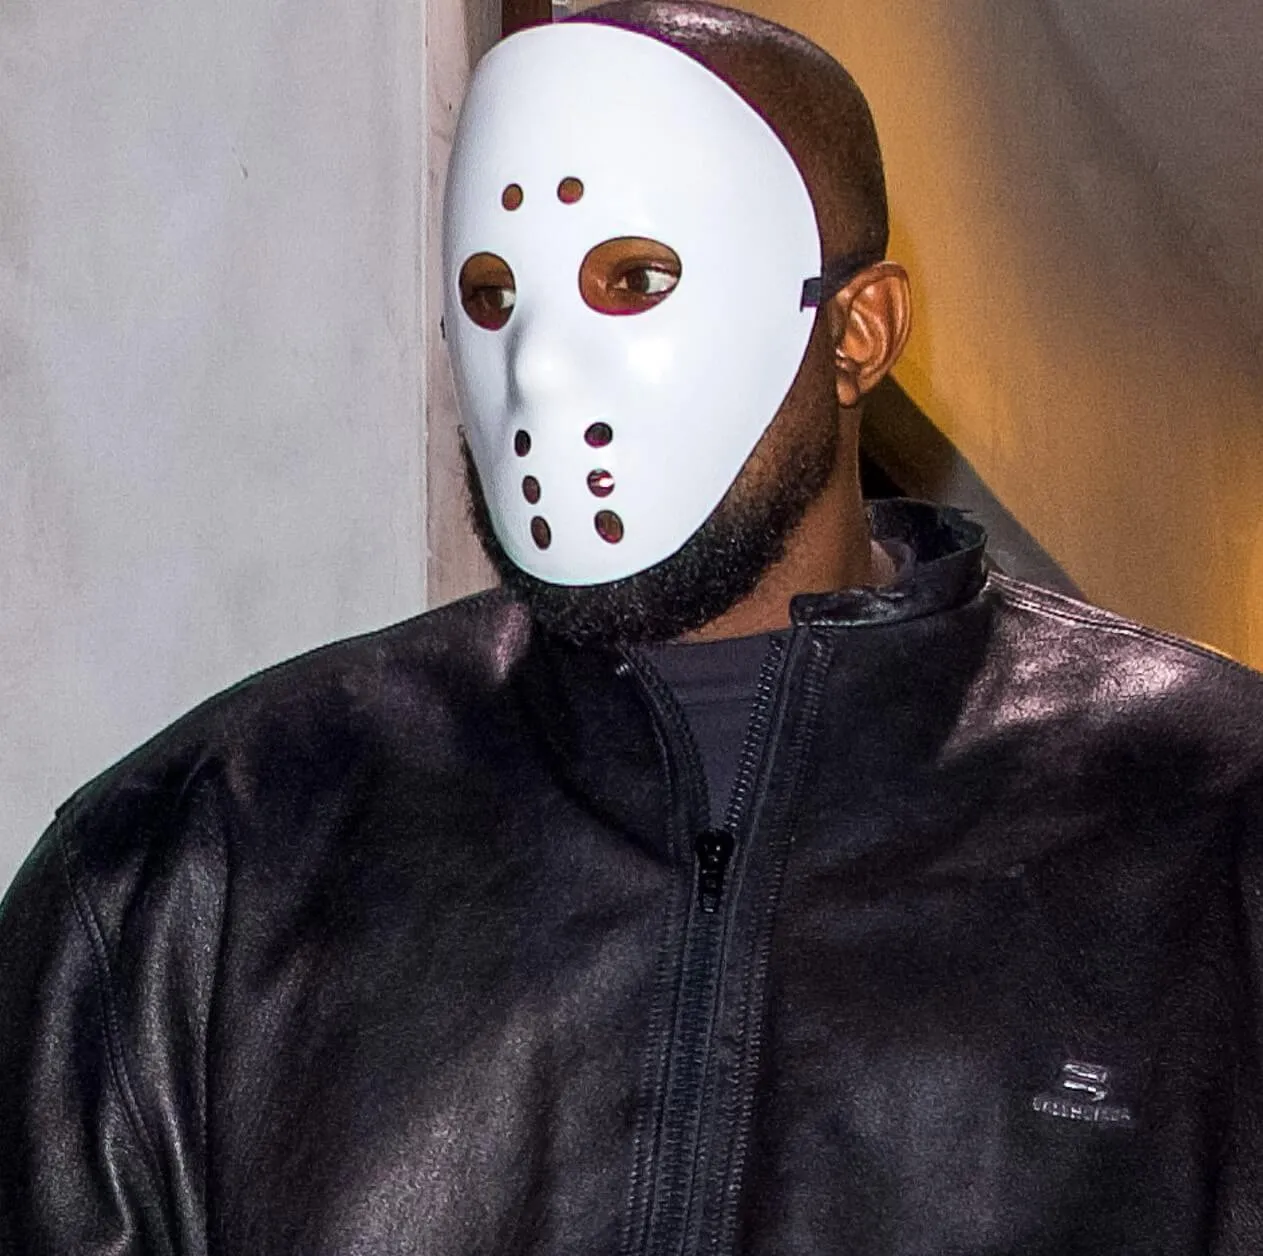 "Slide" rapper Kanye West wearing a mask